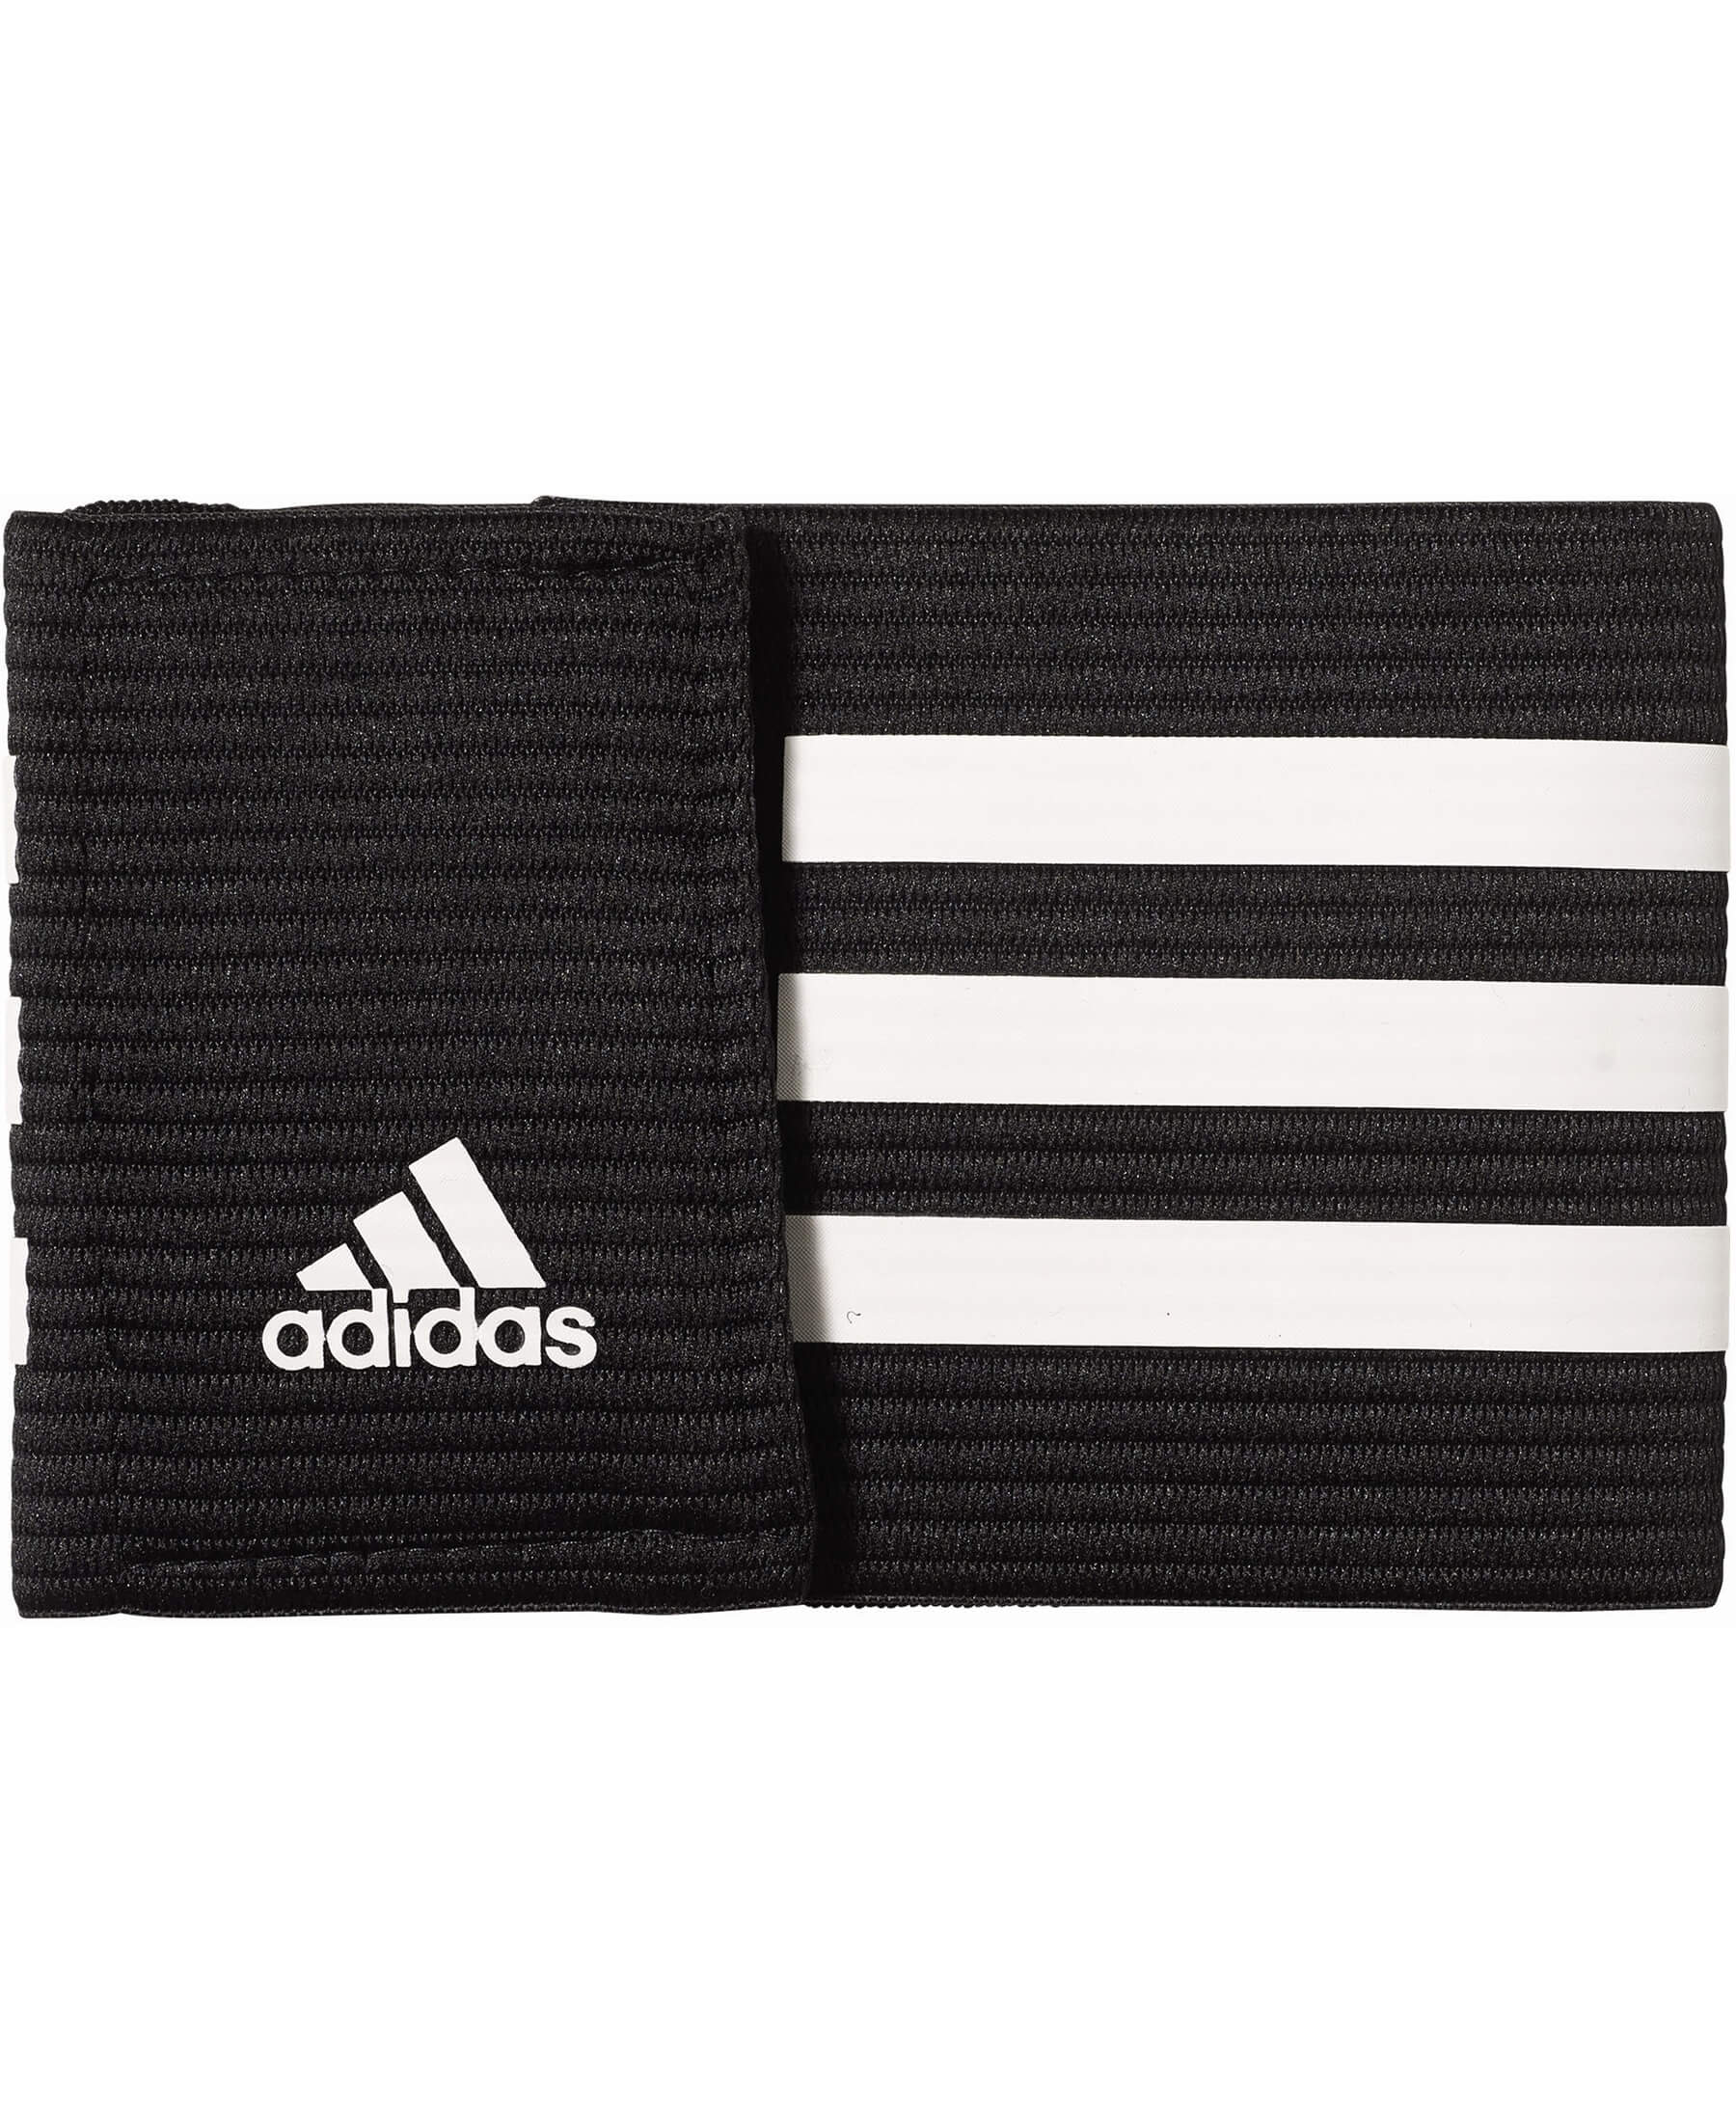 Adidas 3-Stripes Kapitänsbinde - Spielführer-Binde in Schwarz. Hochwertige Kapitänsbinde für Fußballspieler. Jetzt bei SHOP4TEAMSPORT erhältlich. Bestelle jetzt und zeige deine Führungsqualitäten auf dem Spielfeld.